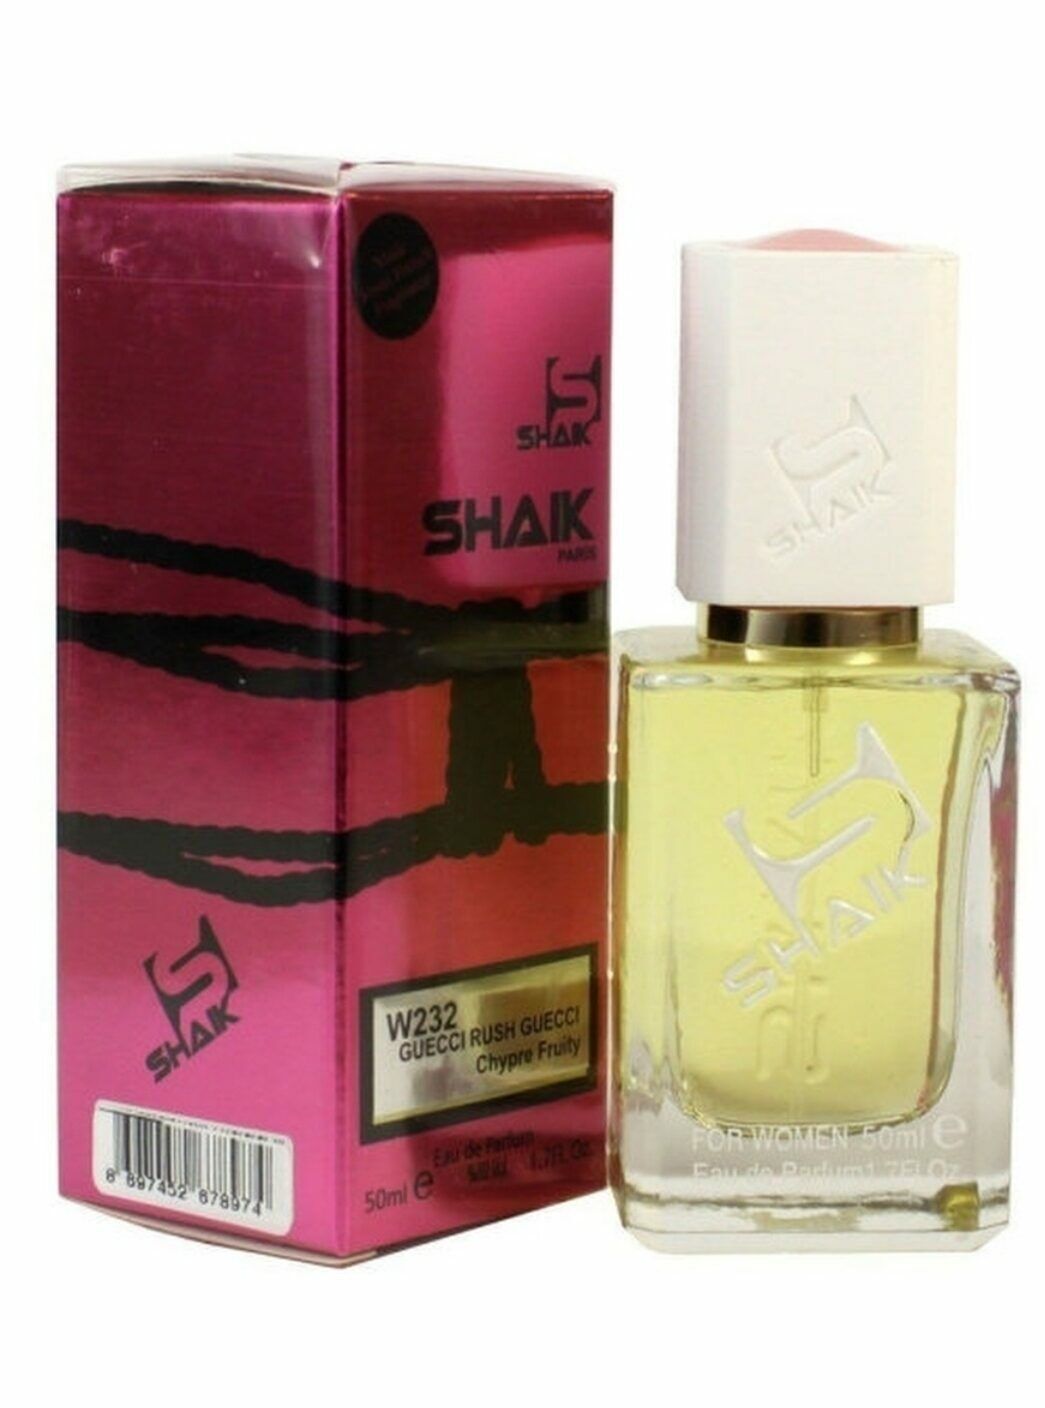 Shaik духи отзывы. Shaik Perfume 50 ml. Shaik 232. Shaik 254 duhi jenskiy. Shaik w178.